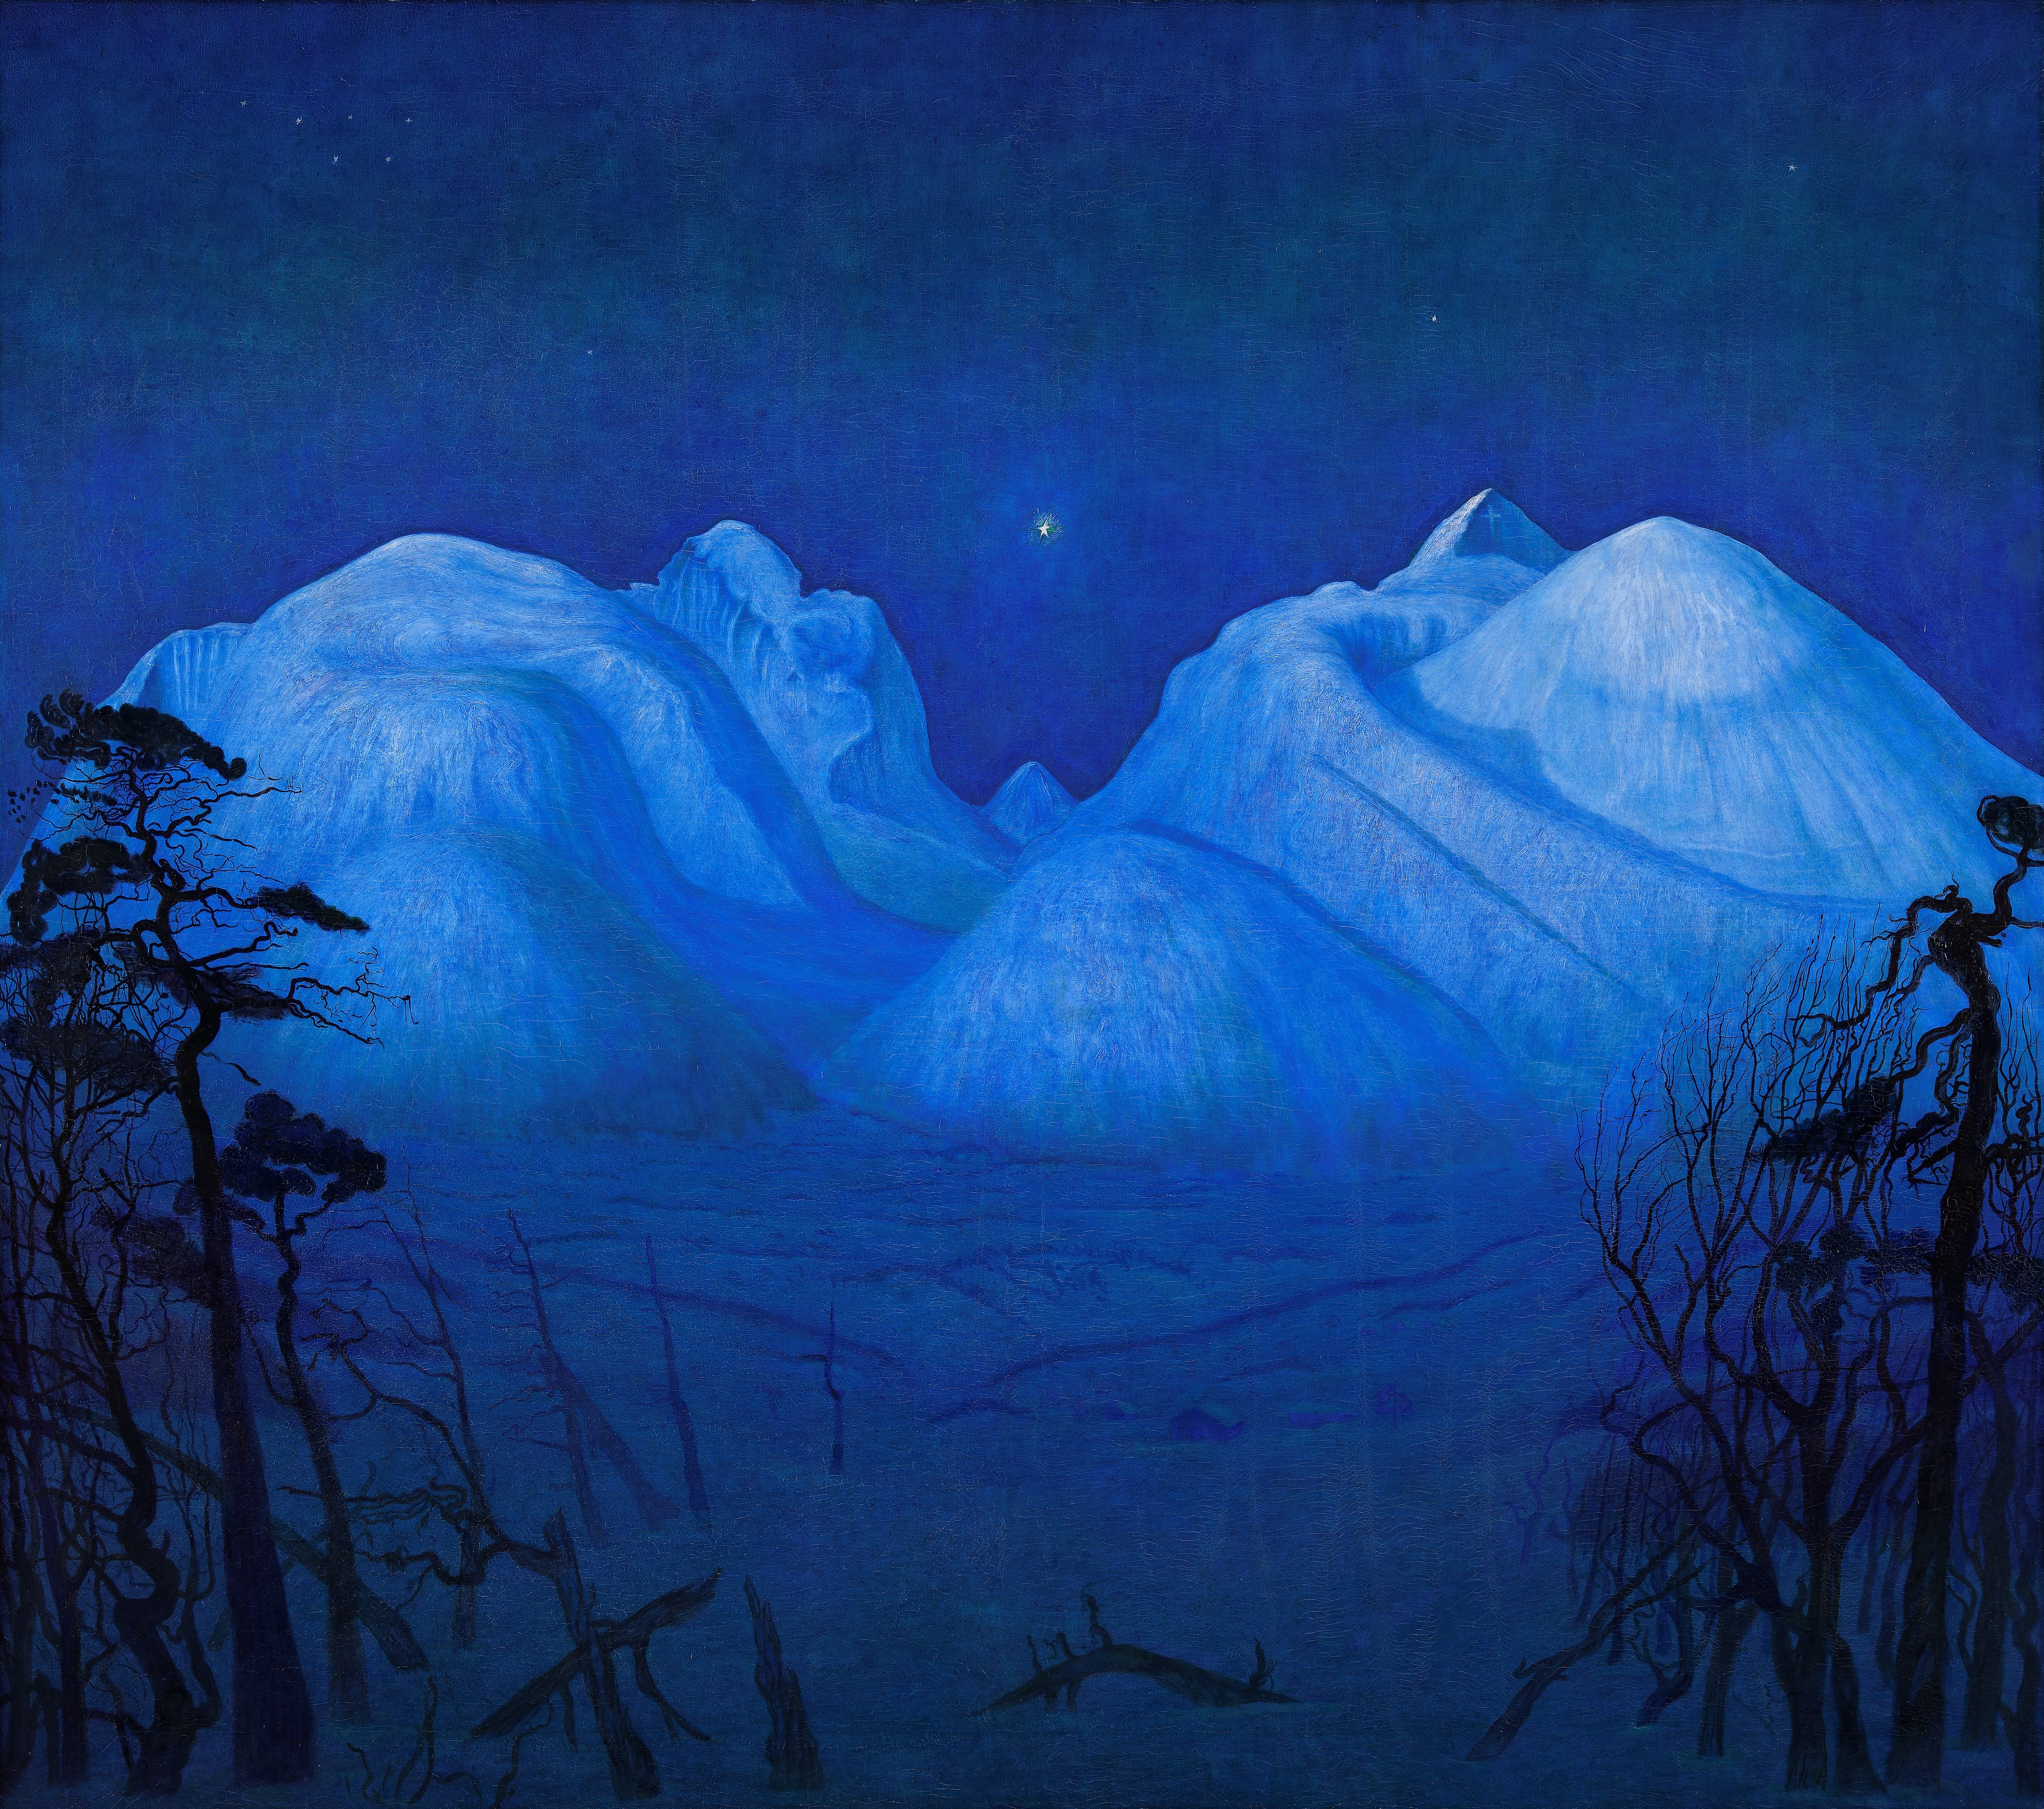 深山冬夜 by Harald Sohlberg - 1914 - 160 x 180.5 cm 